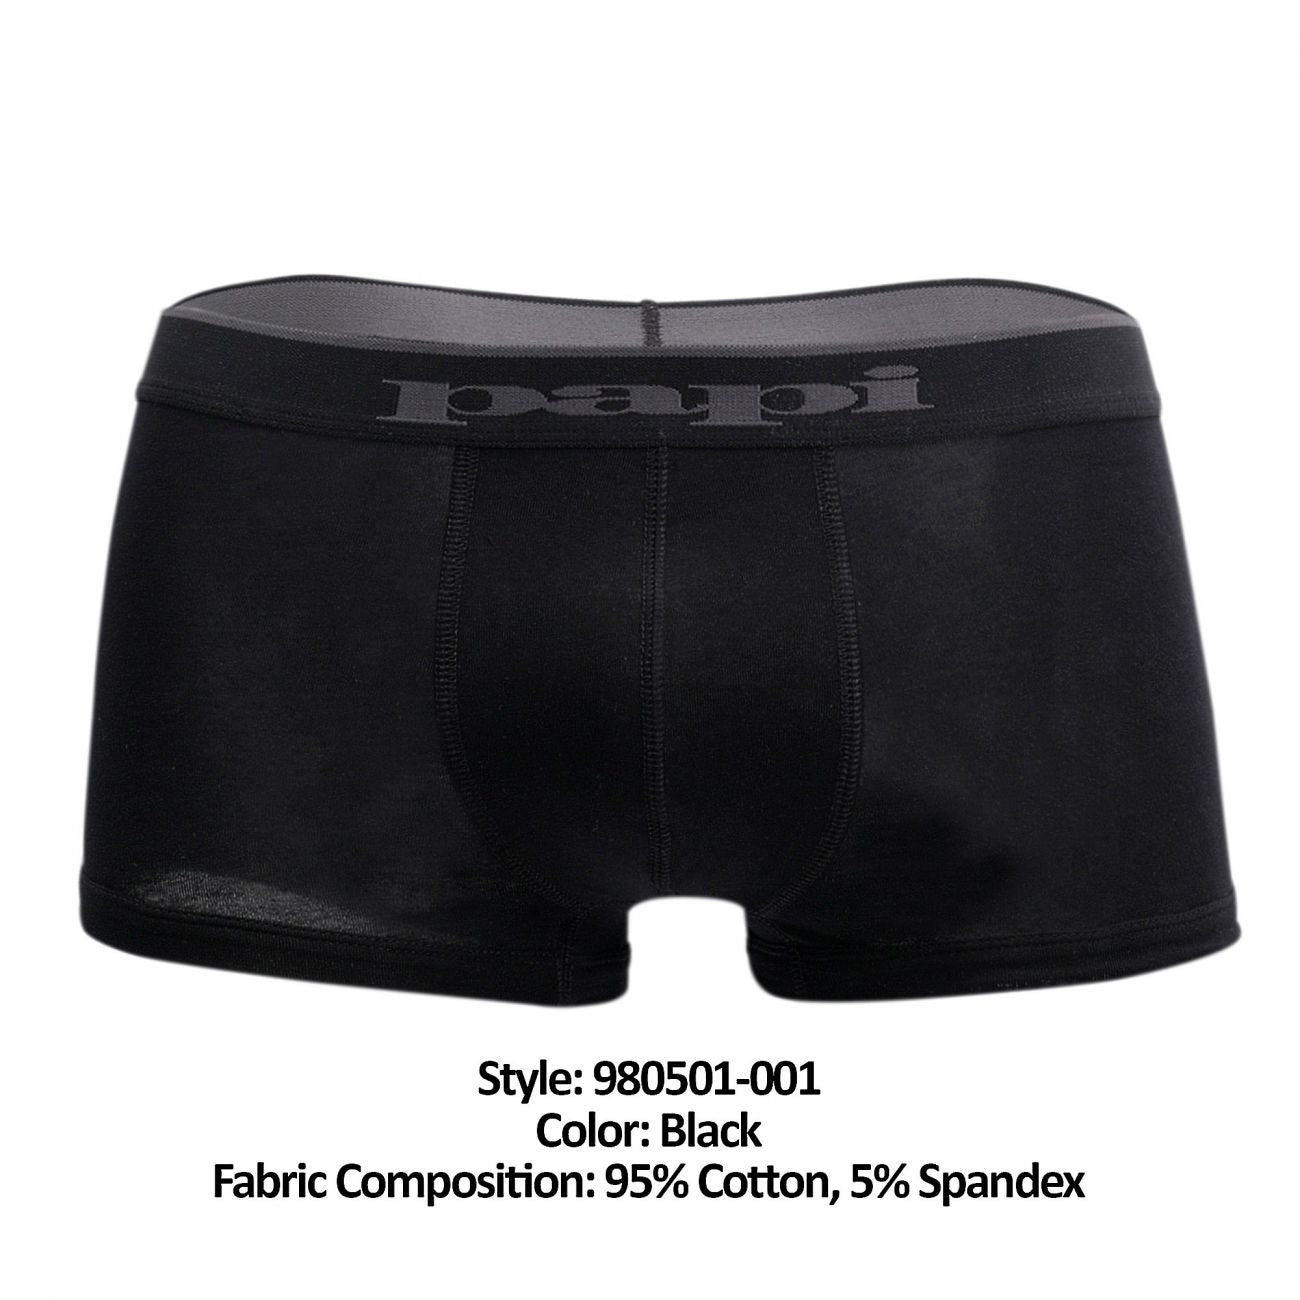 Papi 980501-001 3PK Cotton Stretch Brazilian Black